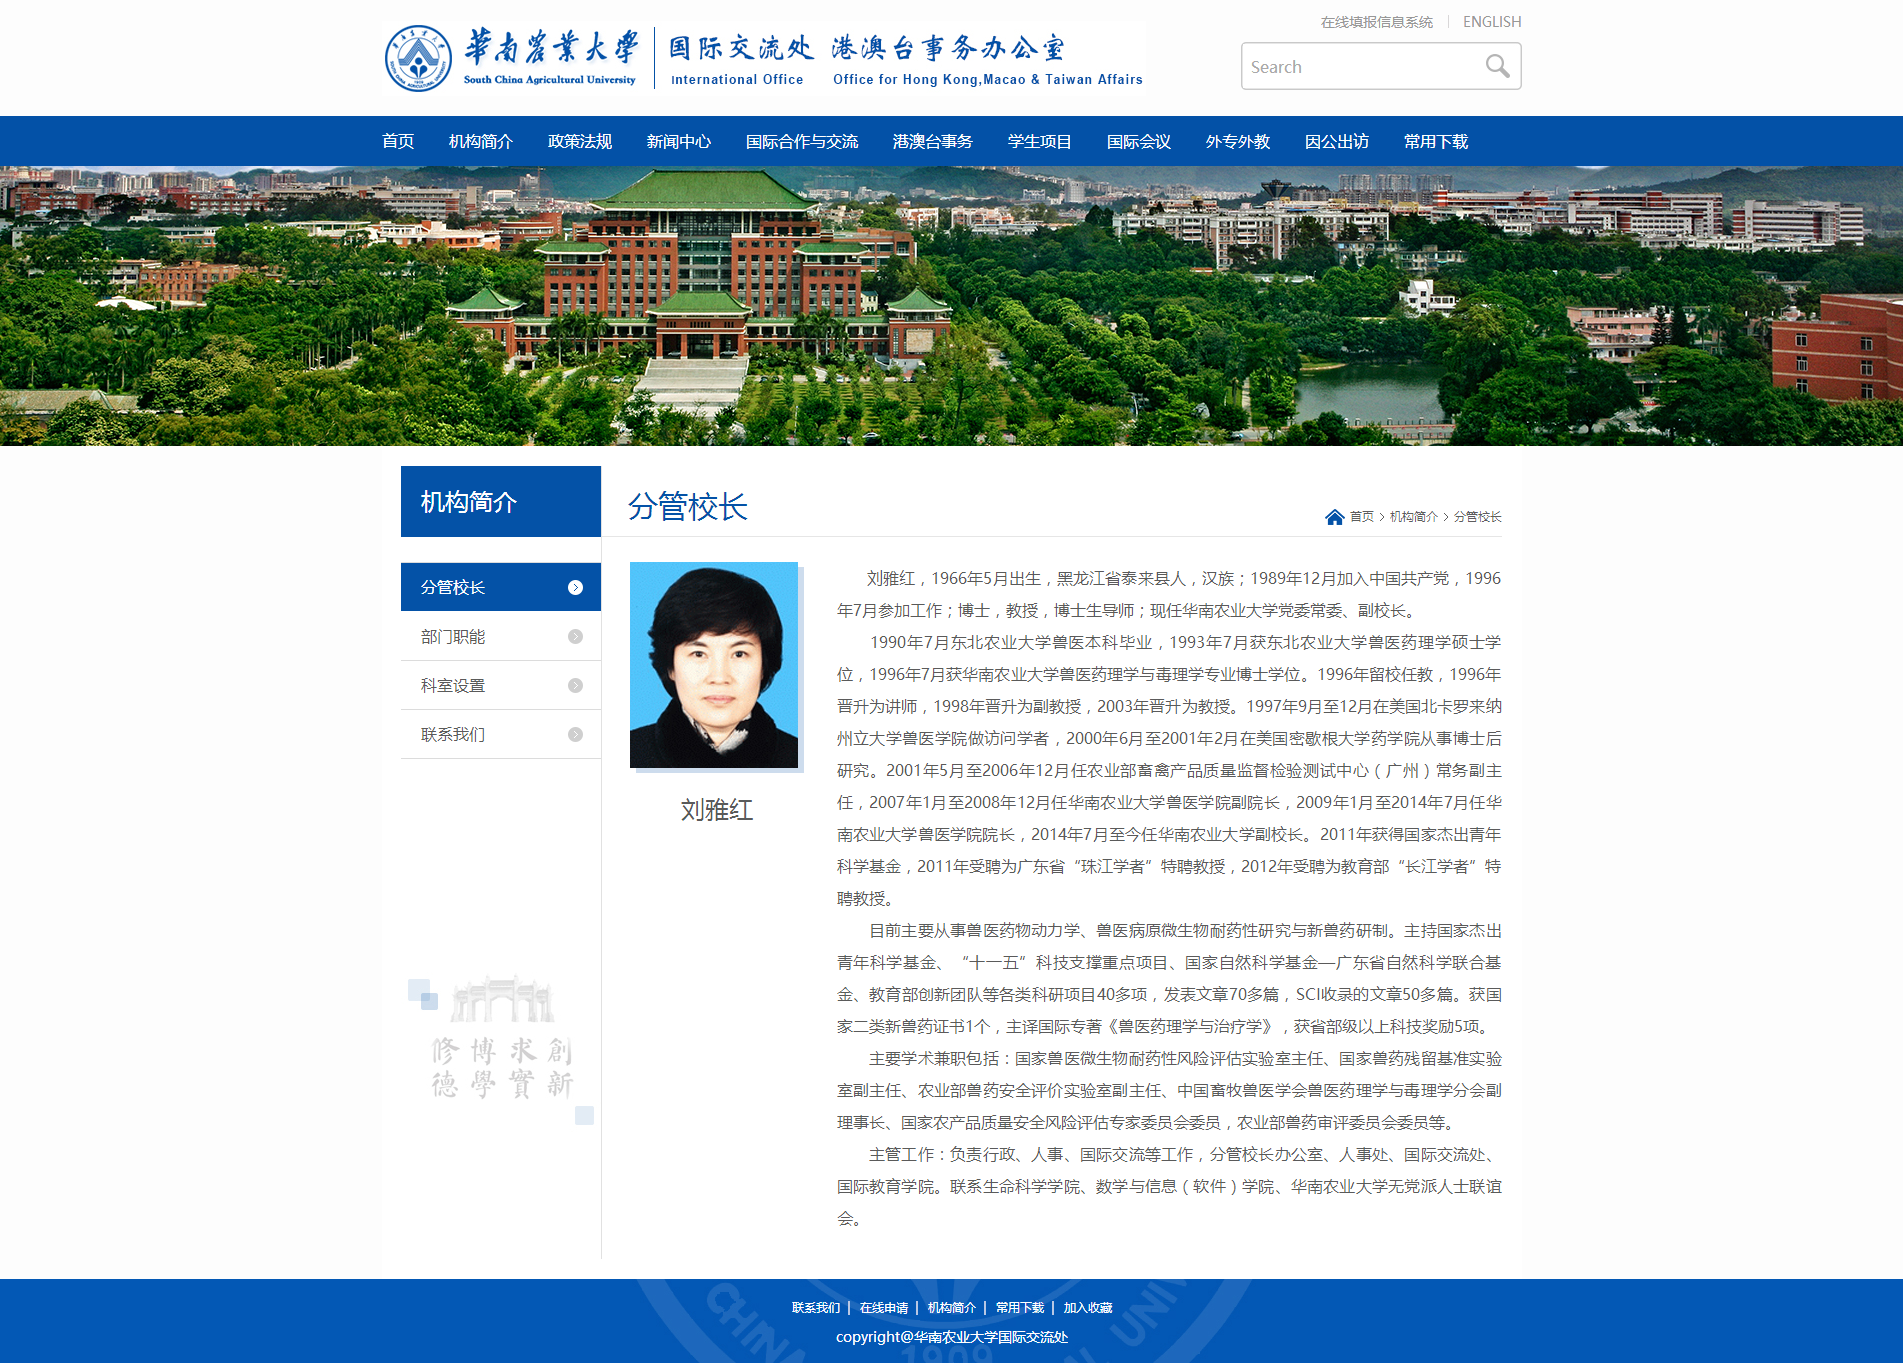 刘雅红-华南农业大学